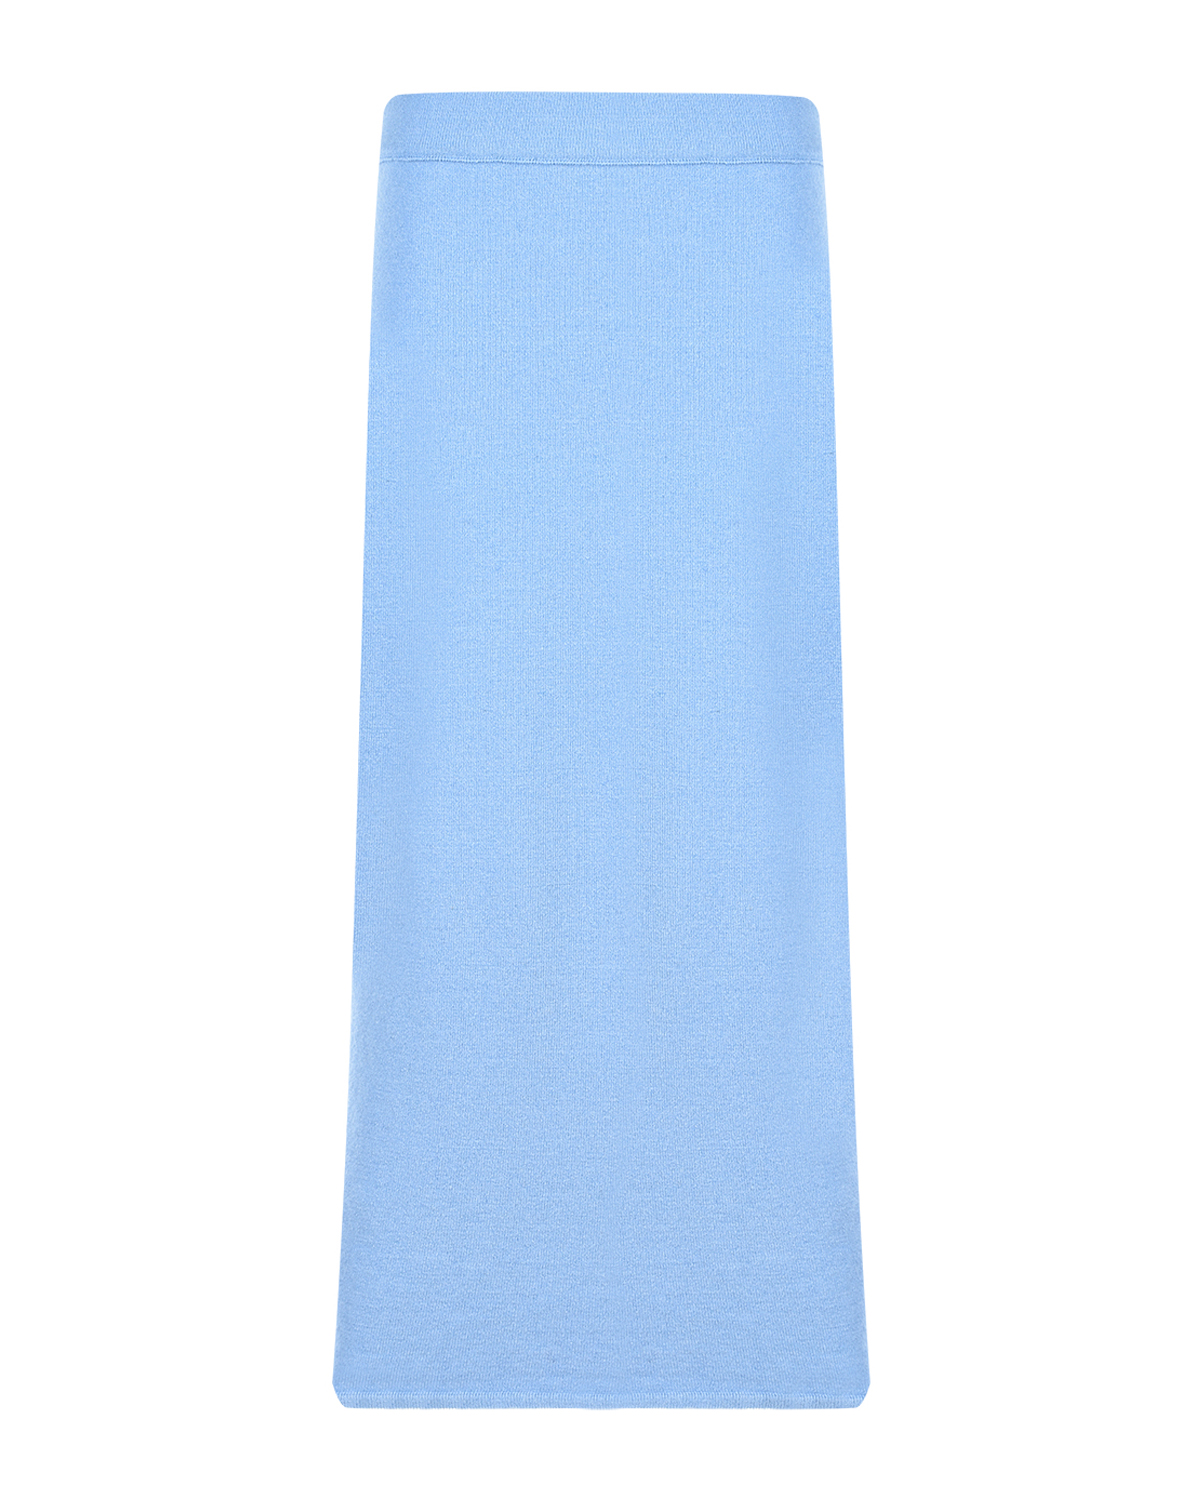 Голубая юбка-миди для беременных Gardena Pietro Brunelli, размер 42, цвет голубой